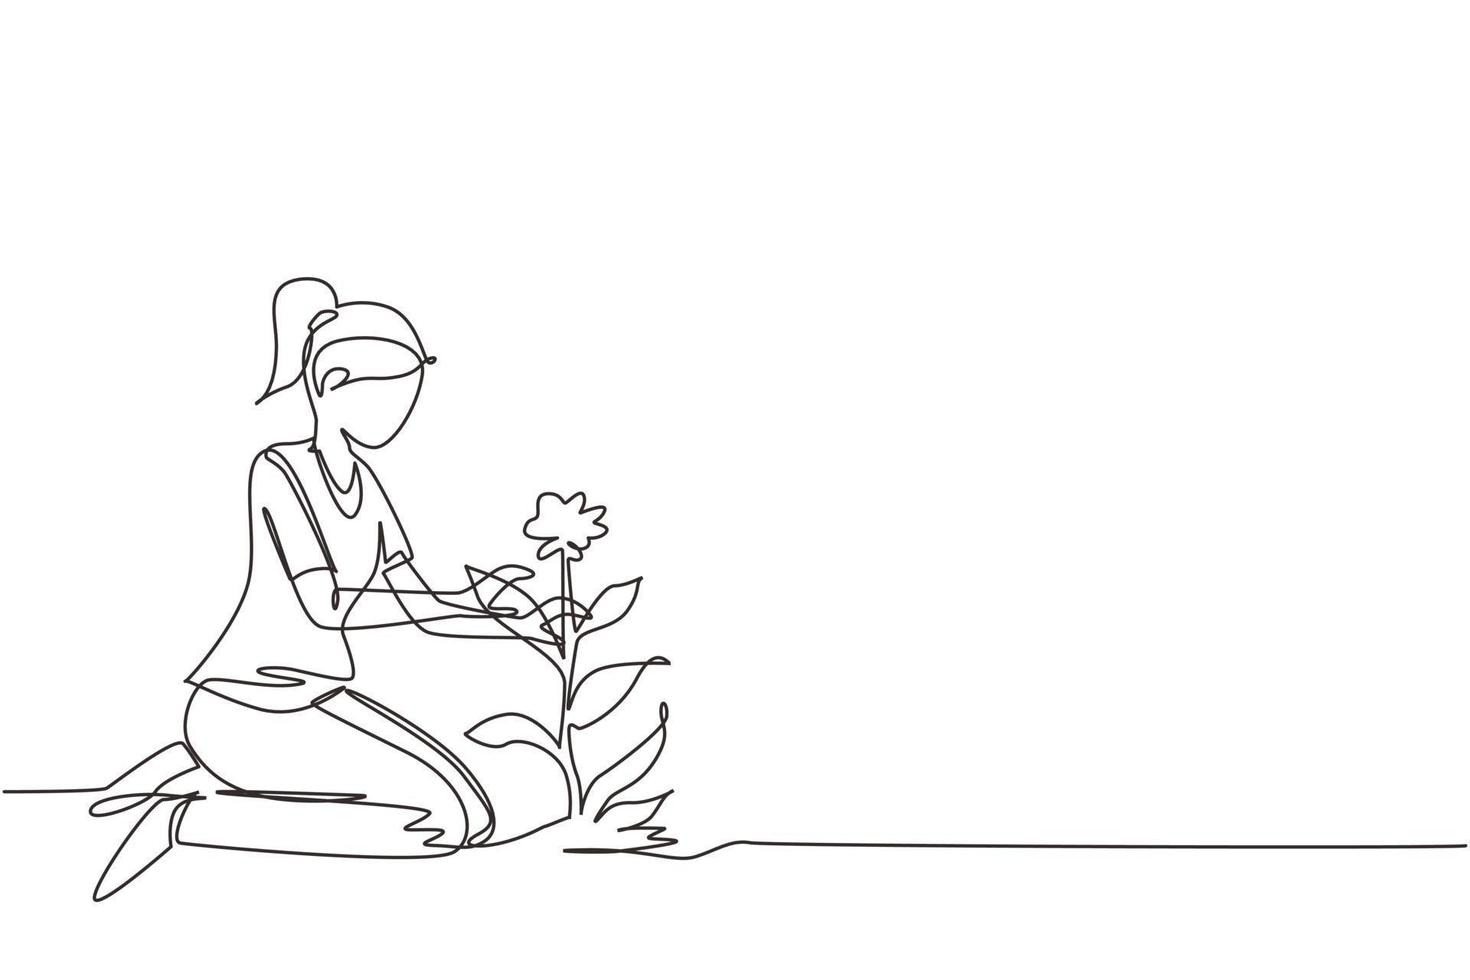 singolo disegno a tratteggio giovane donna piante fiori a terra. la ragazza carina trapianta le piante, fa giardinaggio, si prepara alla primavera. hobby domestico, concetto di relax. vettore di disegno a linea continua